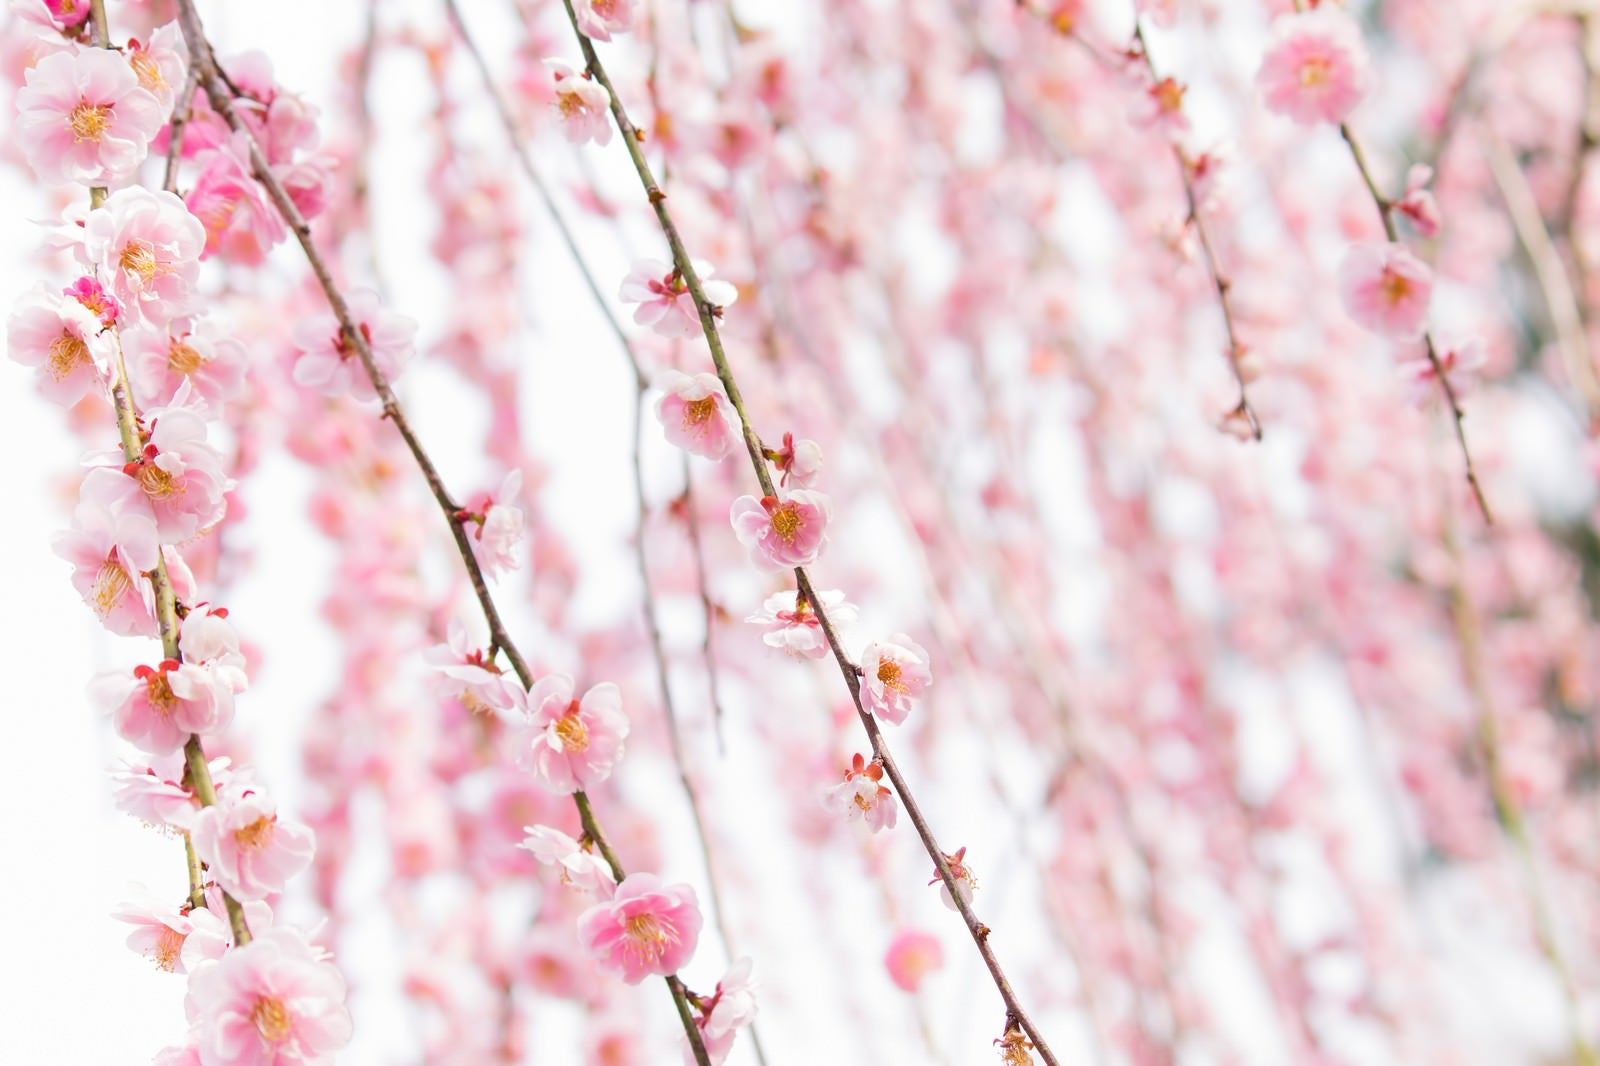 「ピンク色した梅の花」の写真